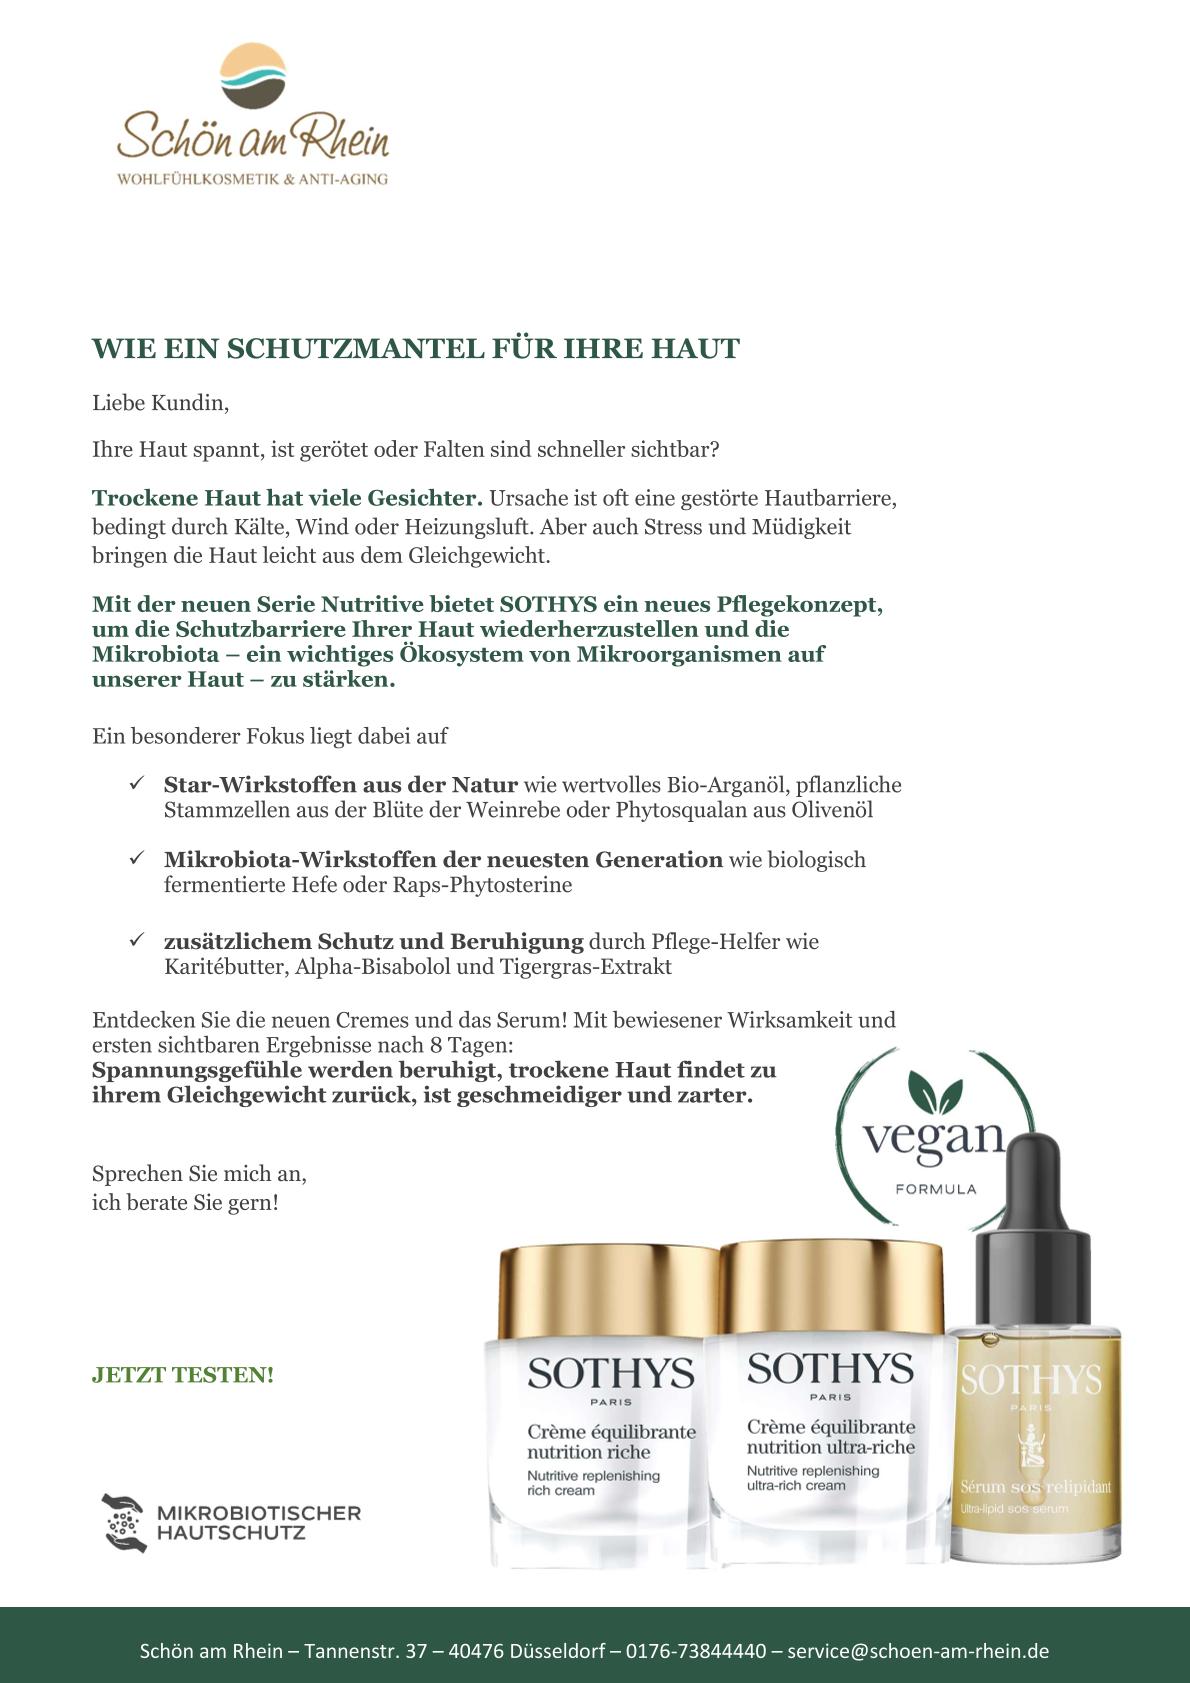 Sothys Produkte schön am rhein trockene haut nutritive